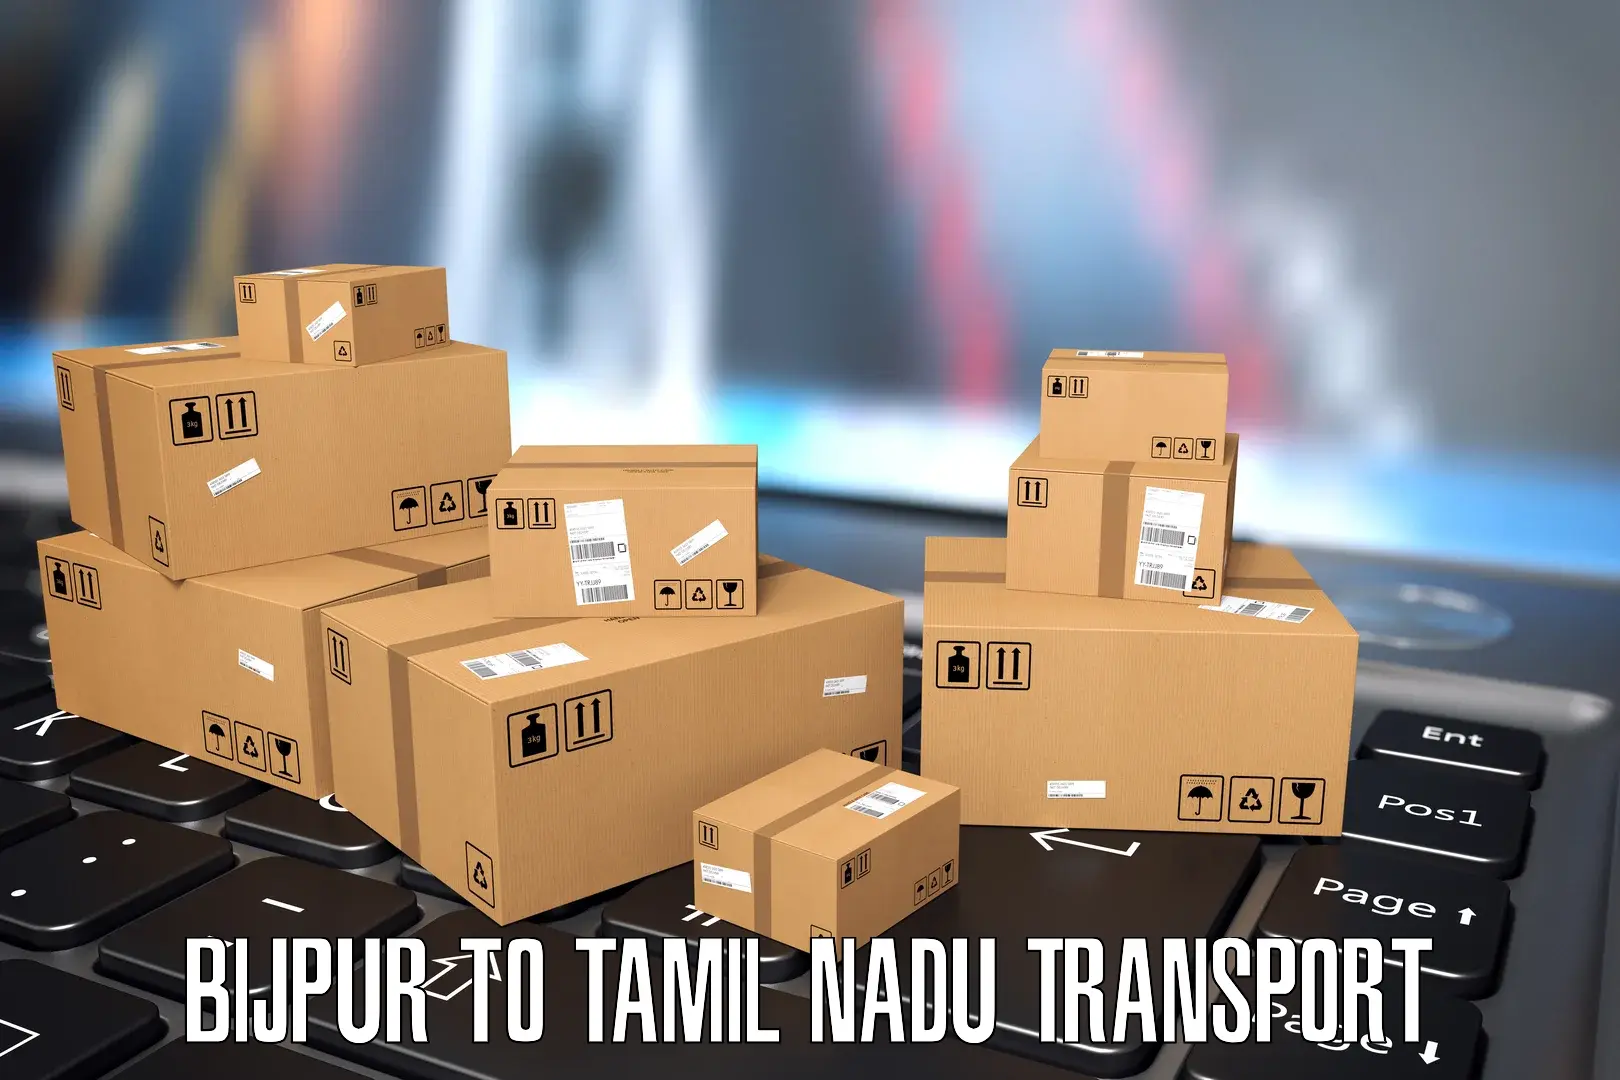 Air cargo transport services Bijpur to Tamil Nadu